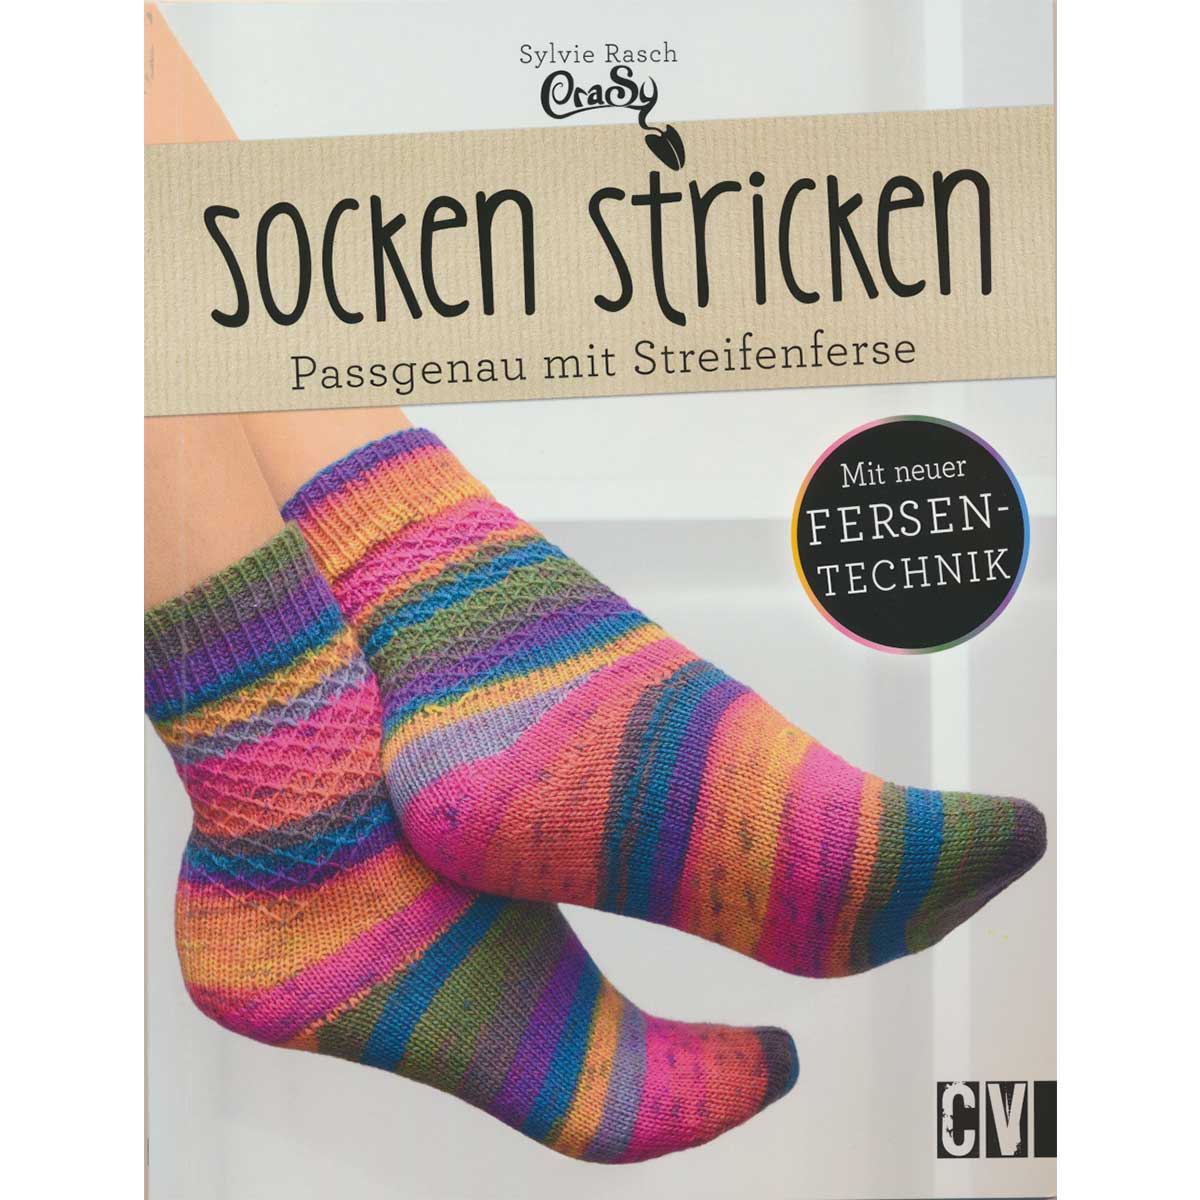 Socken stricken (CV 6413)